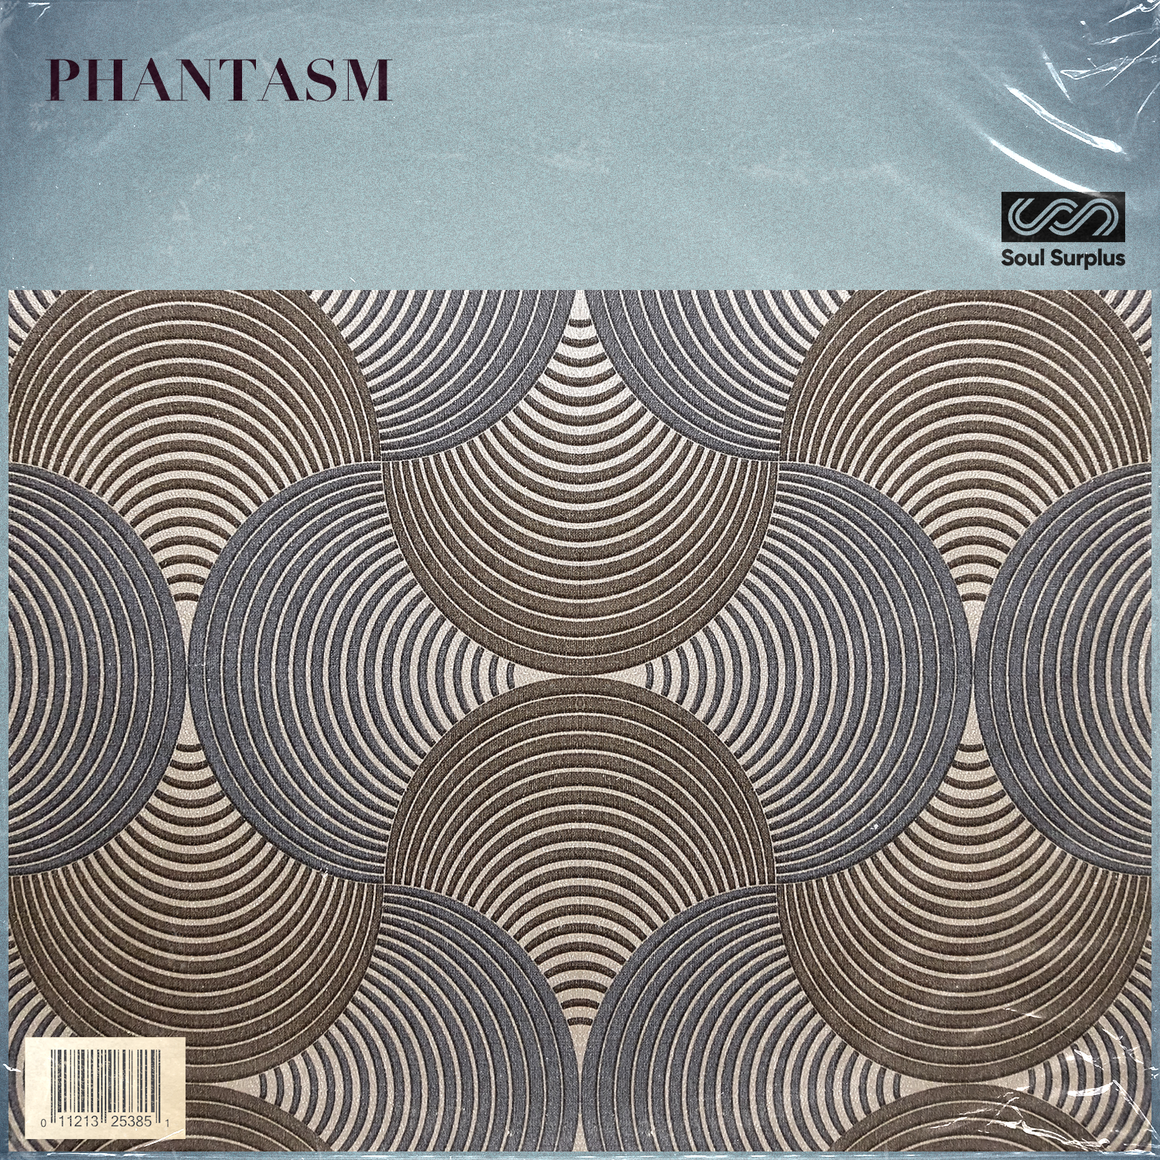 Phantasm (Sample Pack)